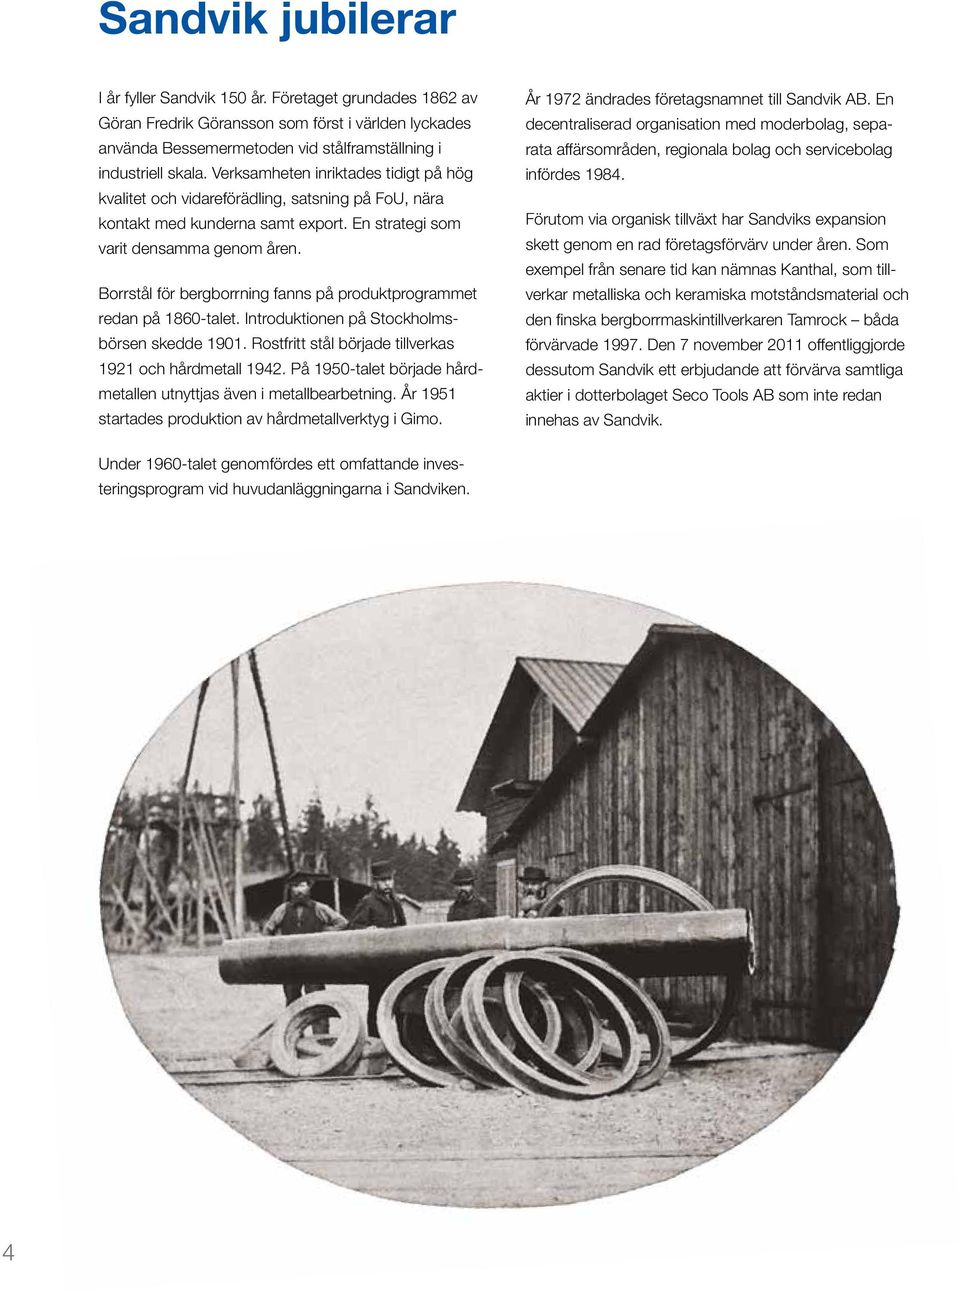 Borrstål för bergborrning fanns på produktprogrammet redan på 1860-talet. Introduktionen på Stockholmsbörsen skedde 1901. Rostfritt stål började tillverkas 1921 och hårdmetall 1942.